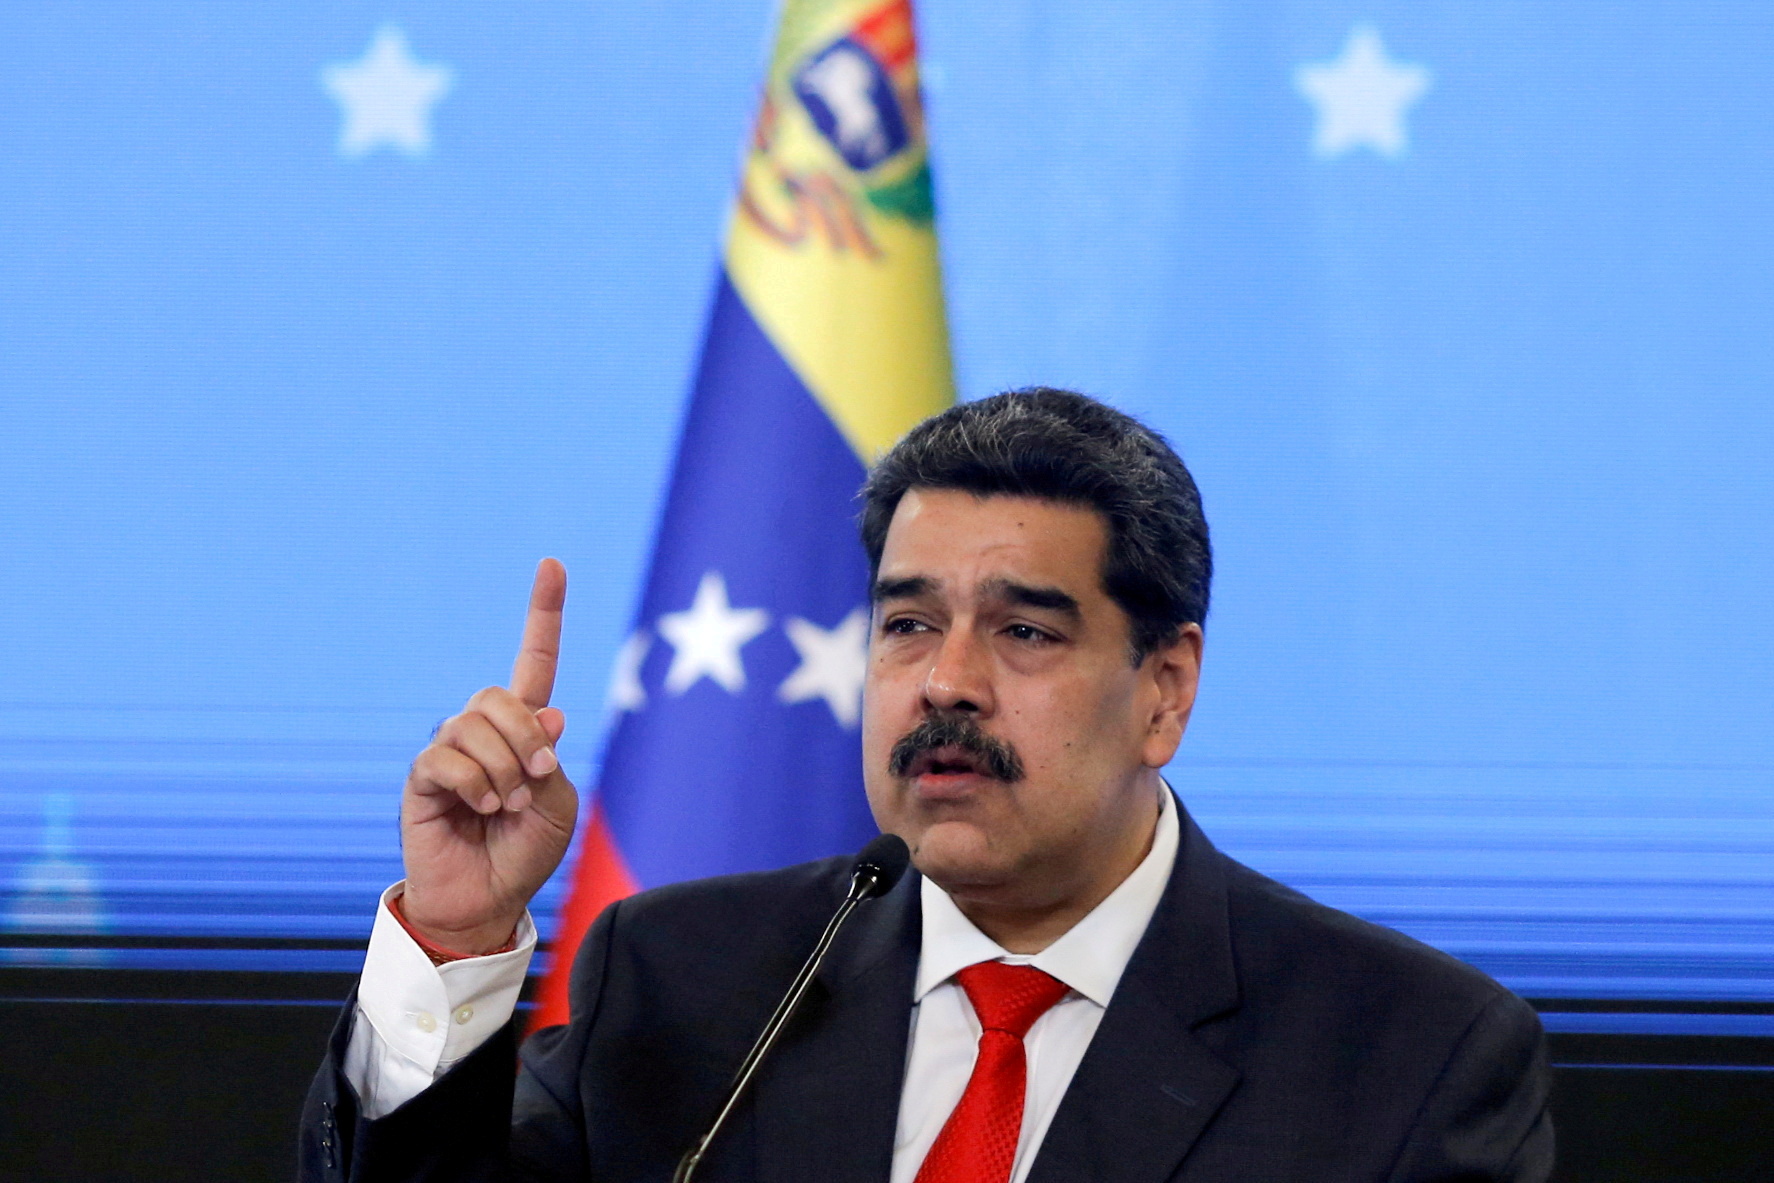 El mandatario de Venezuela resaltó que va a proponer al presidente colombiano la creación de una zona de cooperación entre ambas fronteras